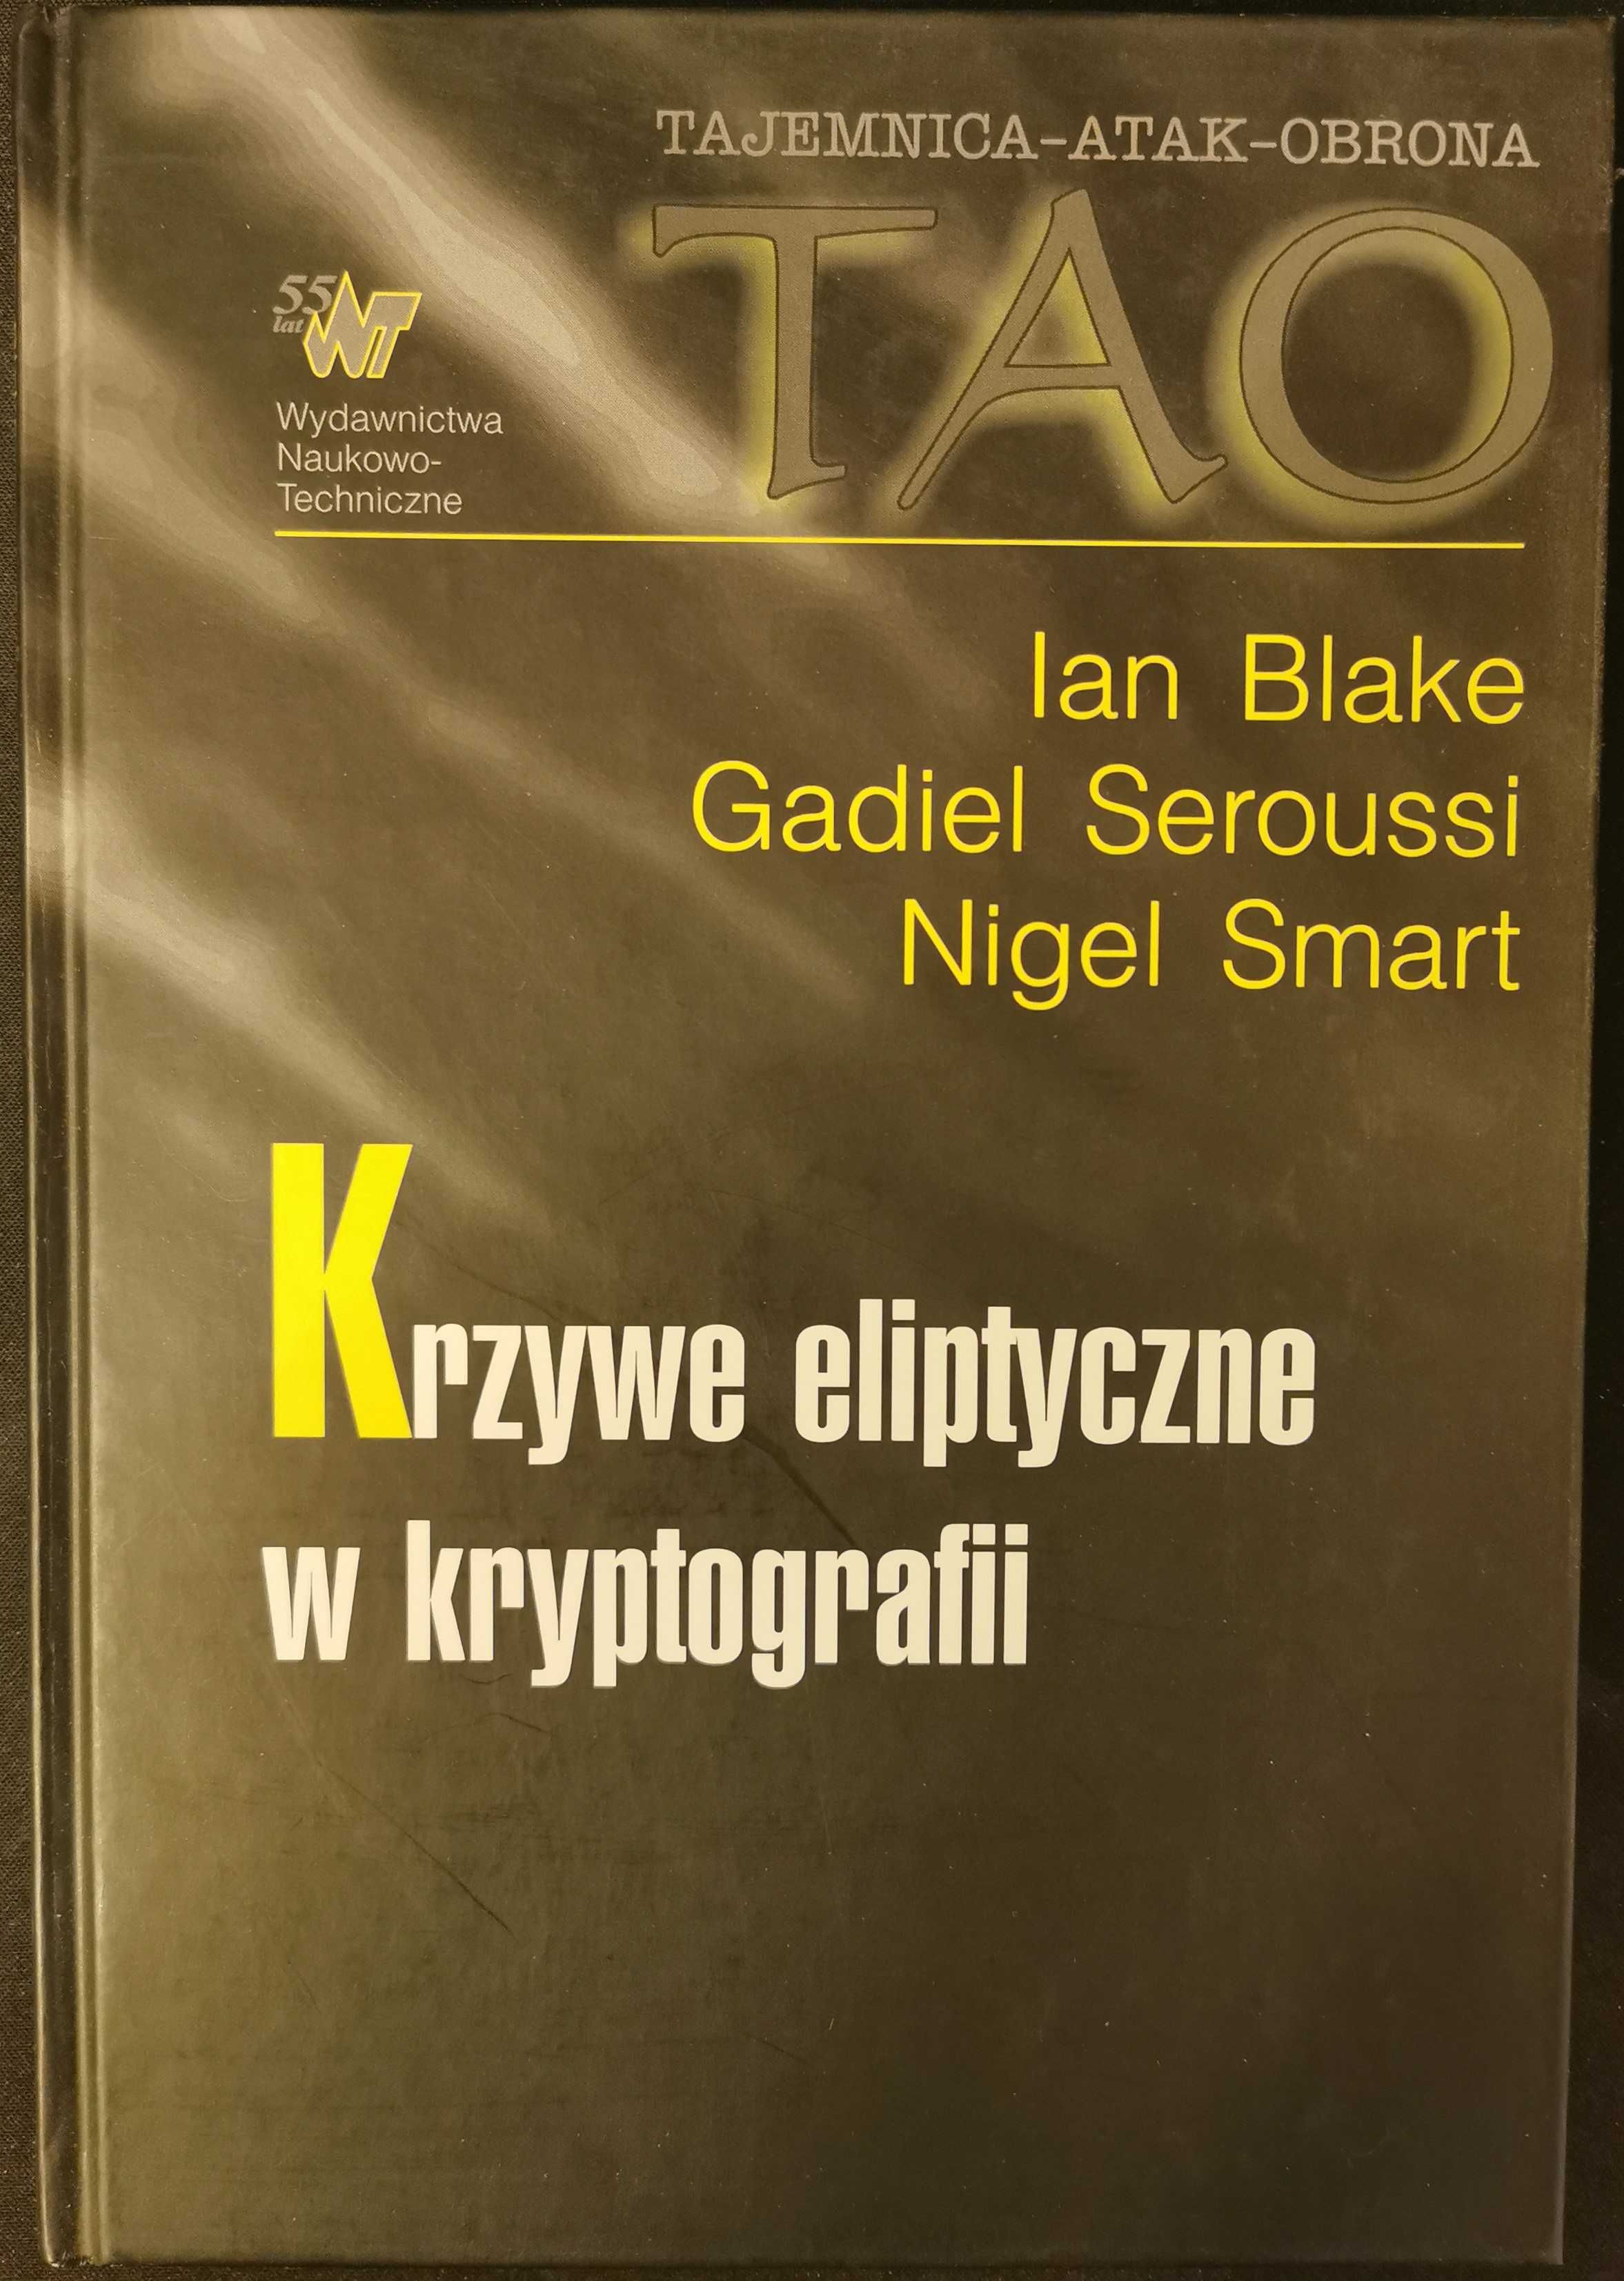 Krzywe eliptyczne w kryptografii - I. Blake, G. Seroussi, N. Smart